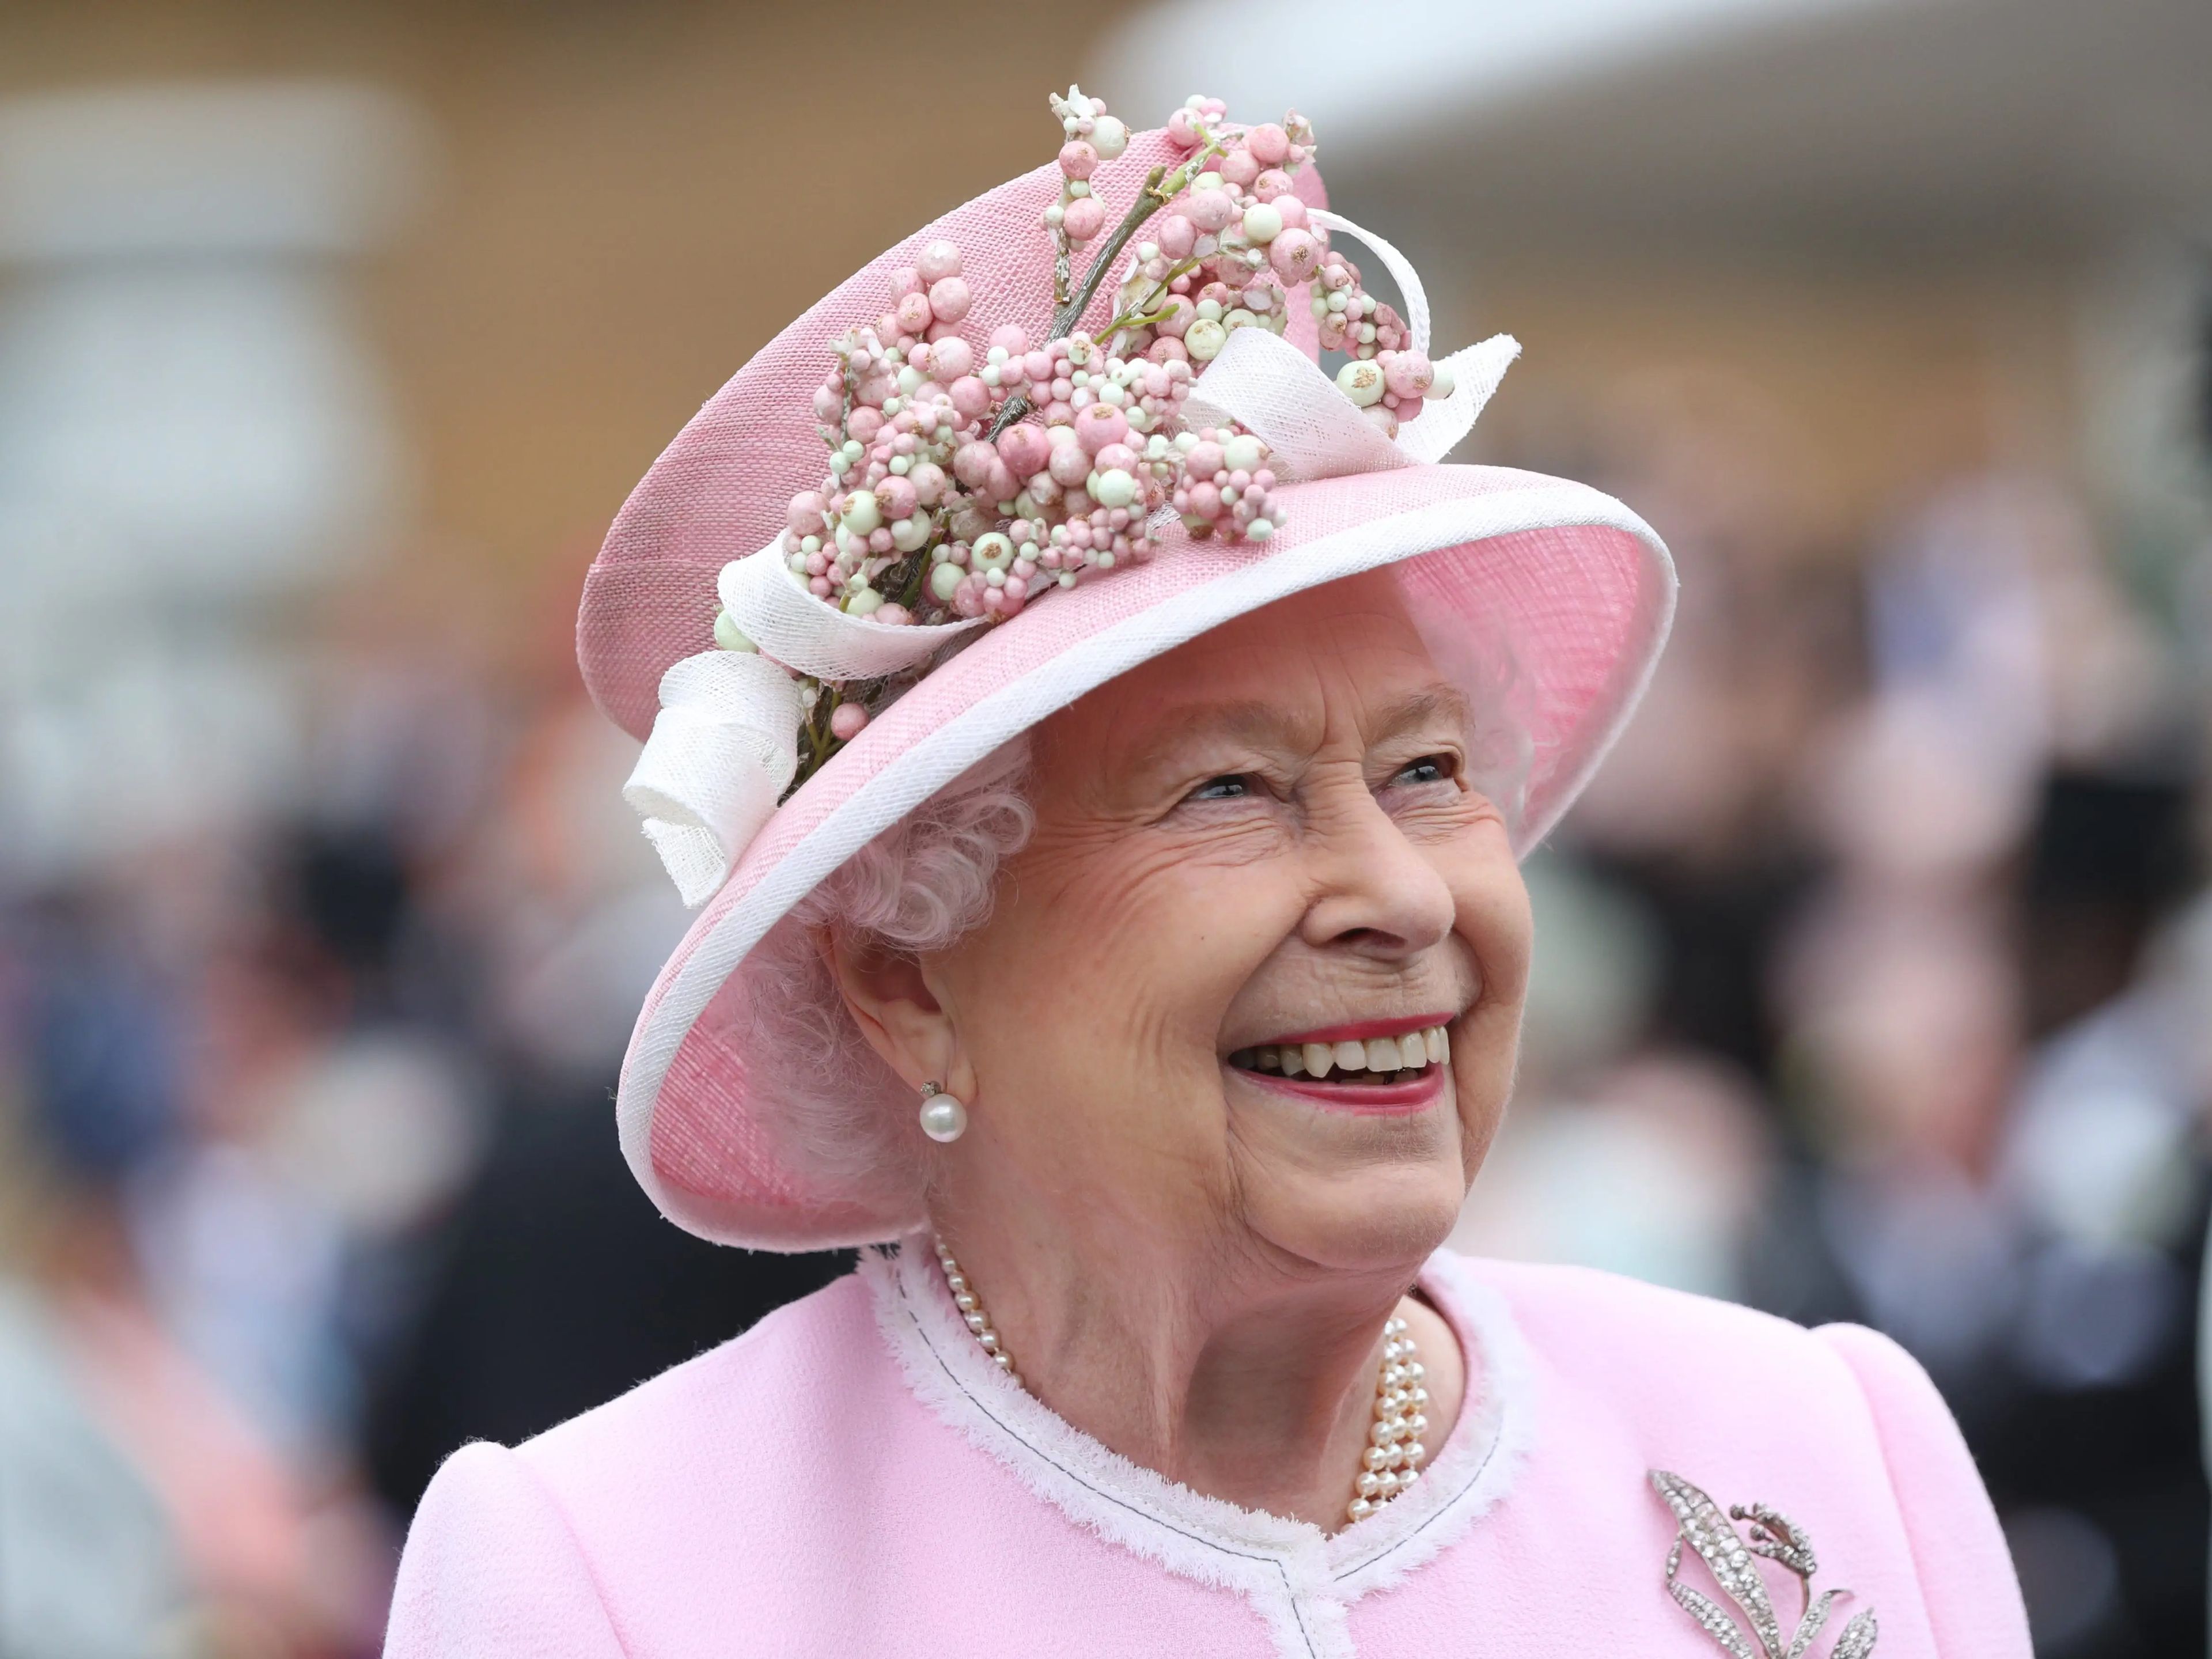 Queen Elizabeth II smiling profit shot, shoulders up